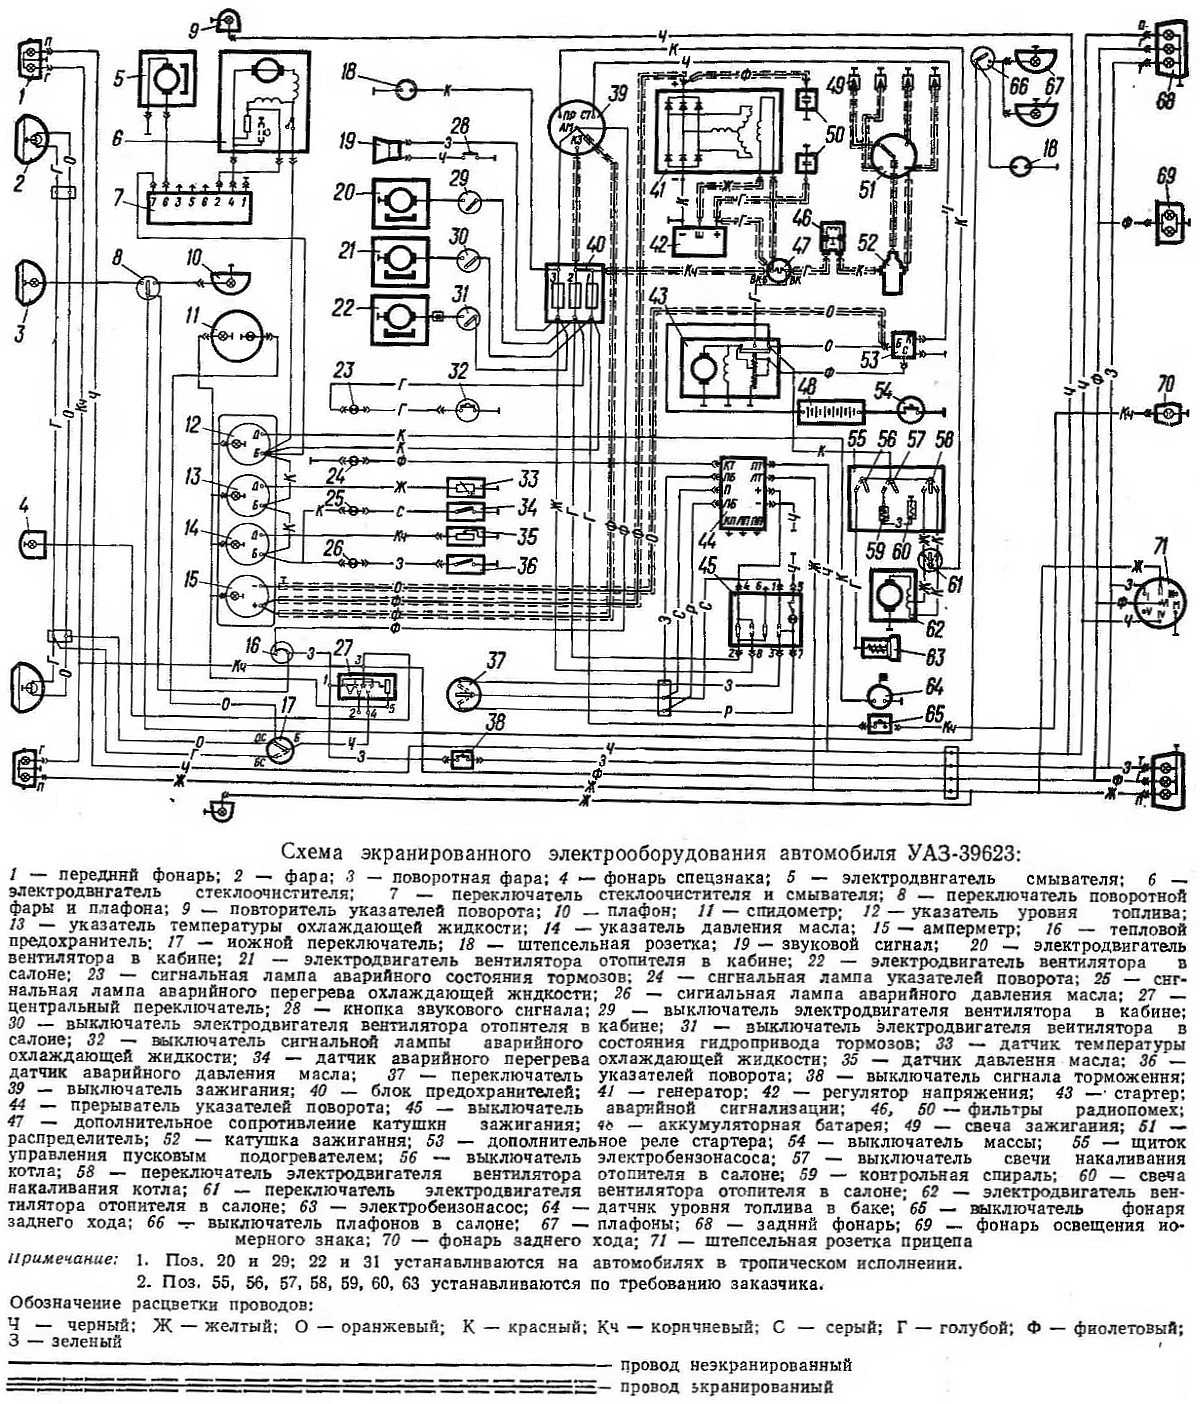 Схема подключения приборов на уаз 390994. начинающему автоэлектрику для справки: схема электропроводки уаз